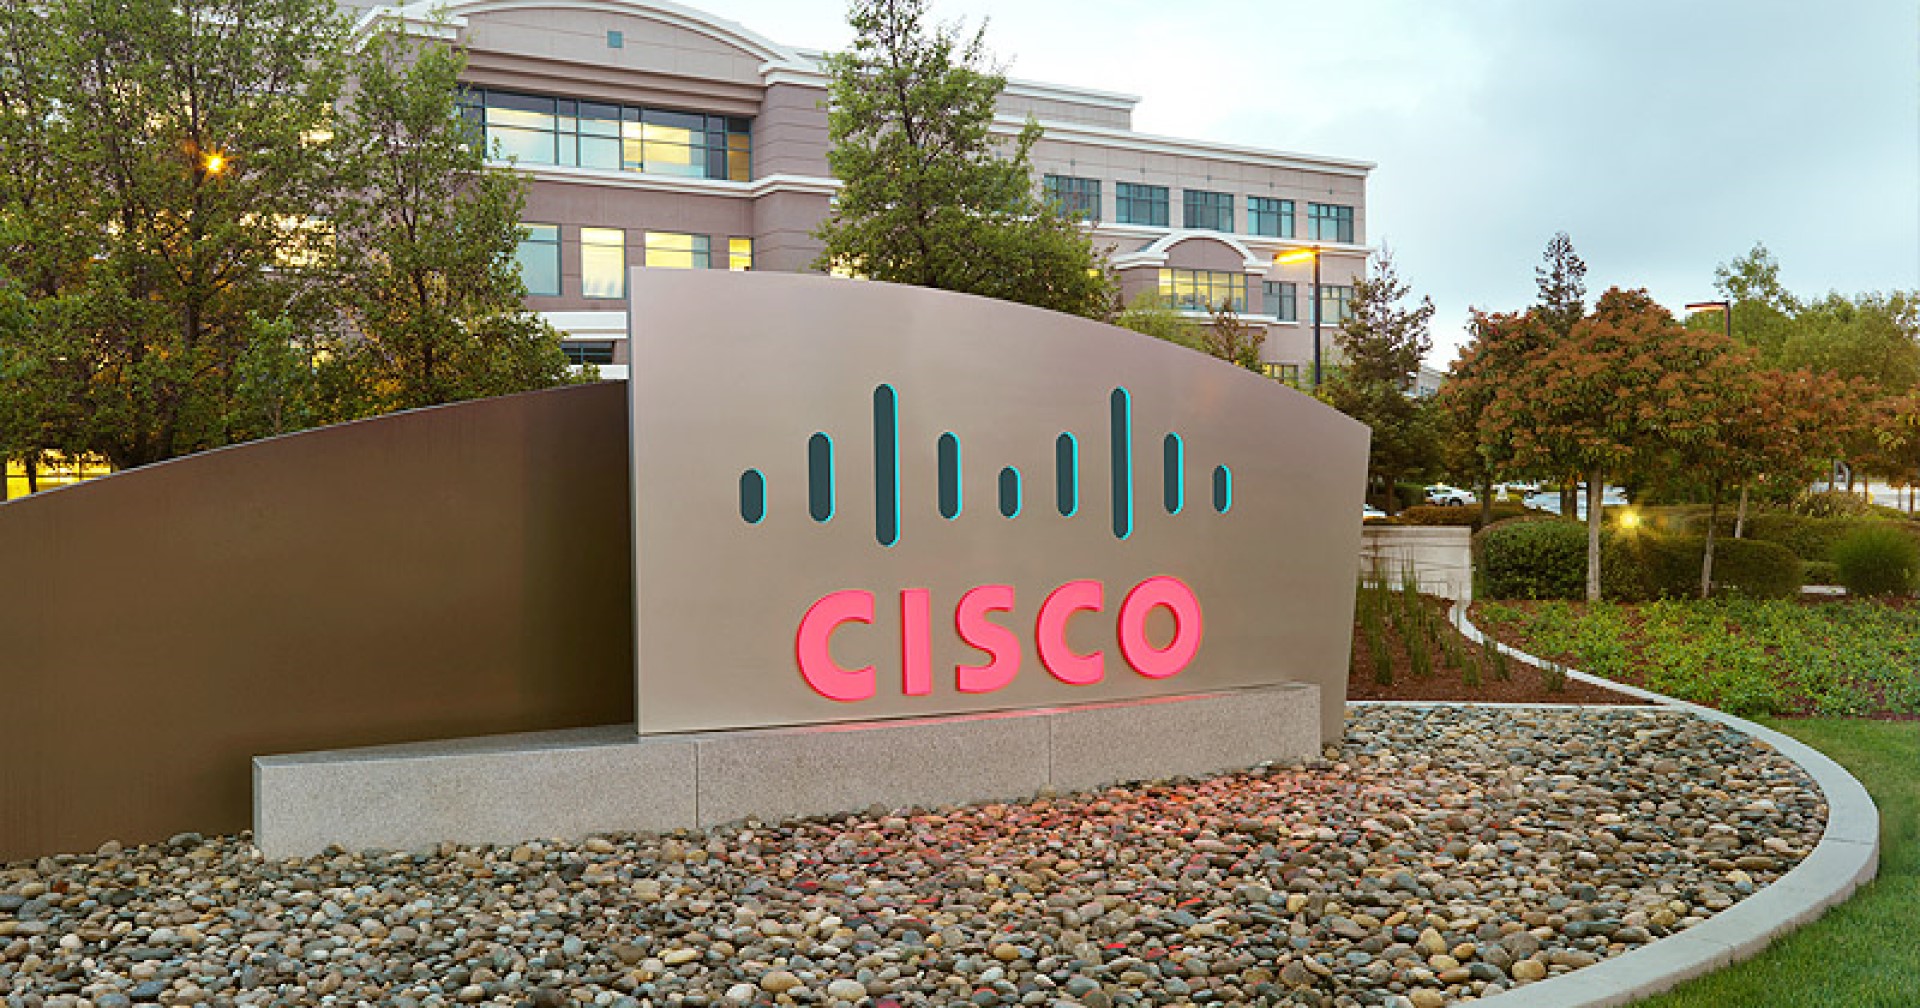 Cisco เผยธุรกิจมาเลเซียเพียงร้อยละ 19 ที่พร้อมรับมือไซเบอร์ในระดับดี